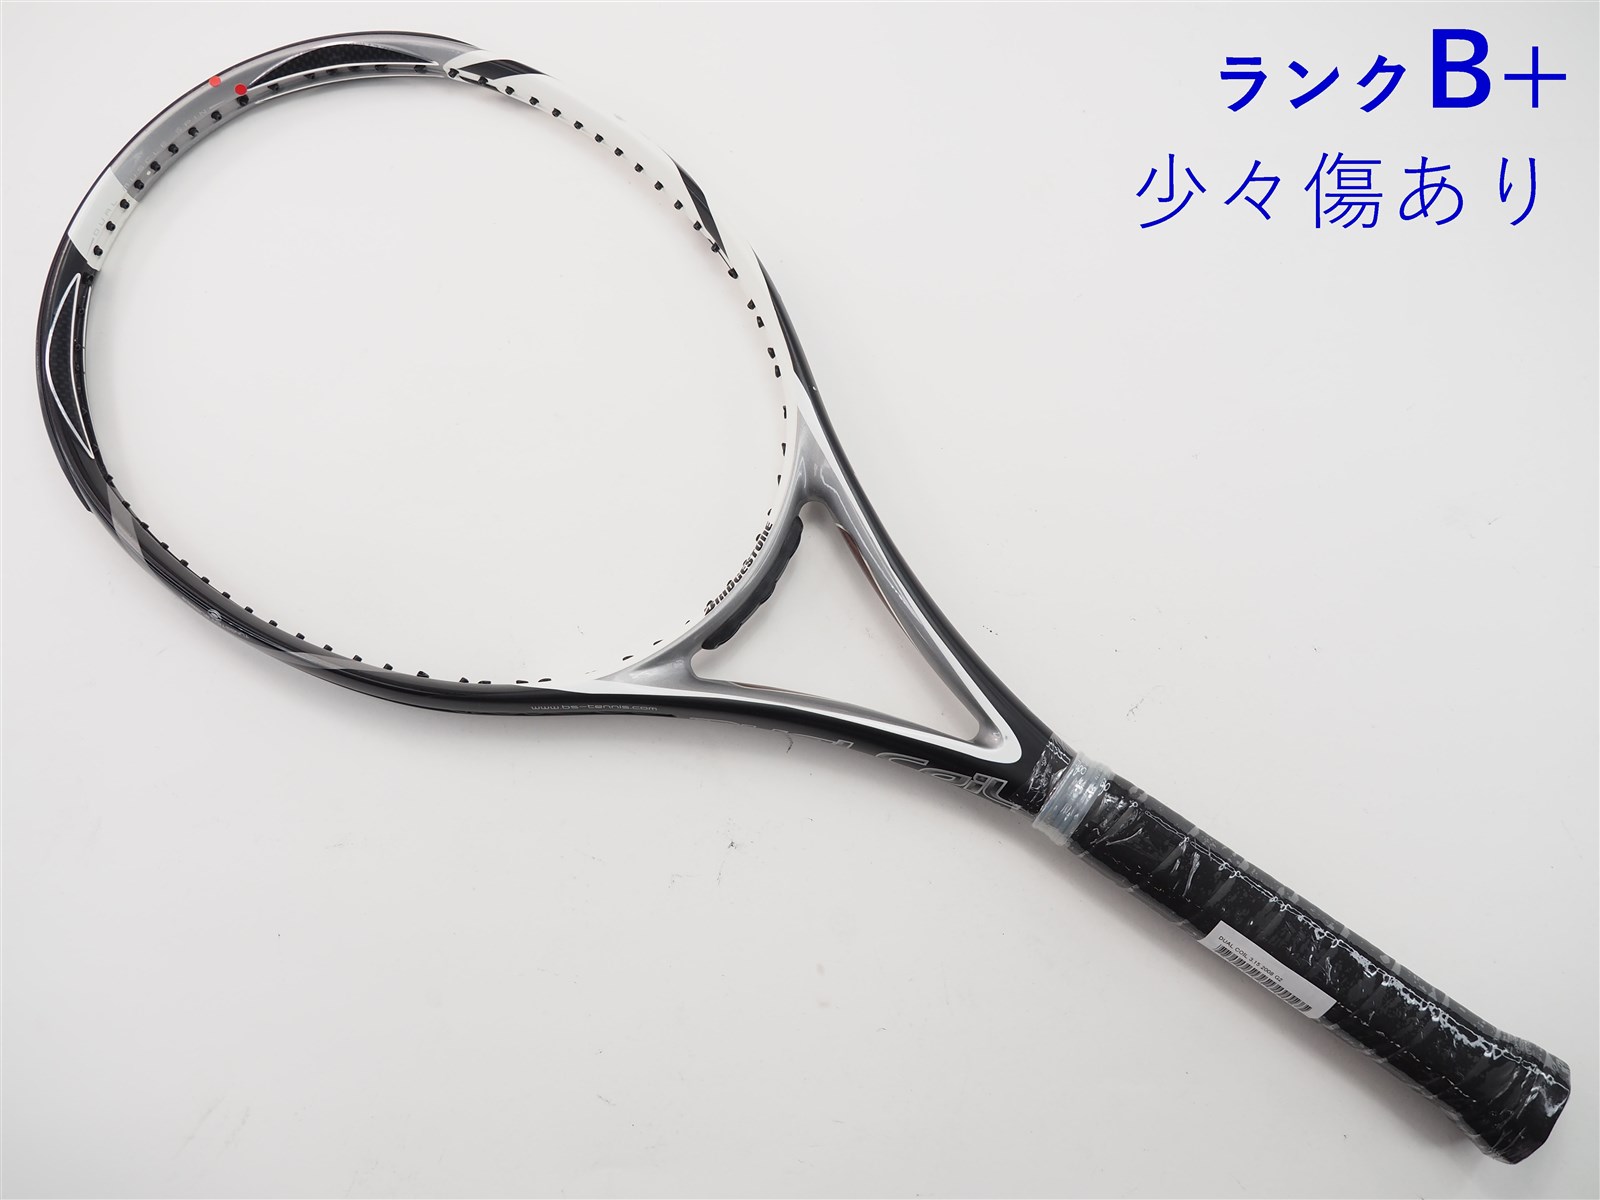 テニスラケット ブリヂストン デュアルコイル 3.0 2007年モデル (G2 ...